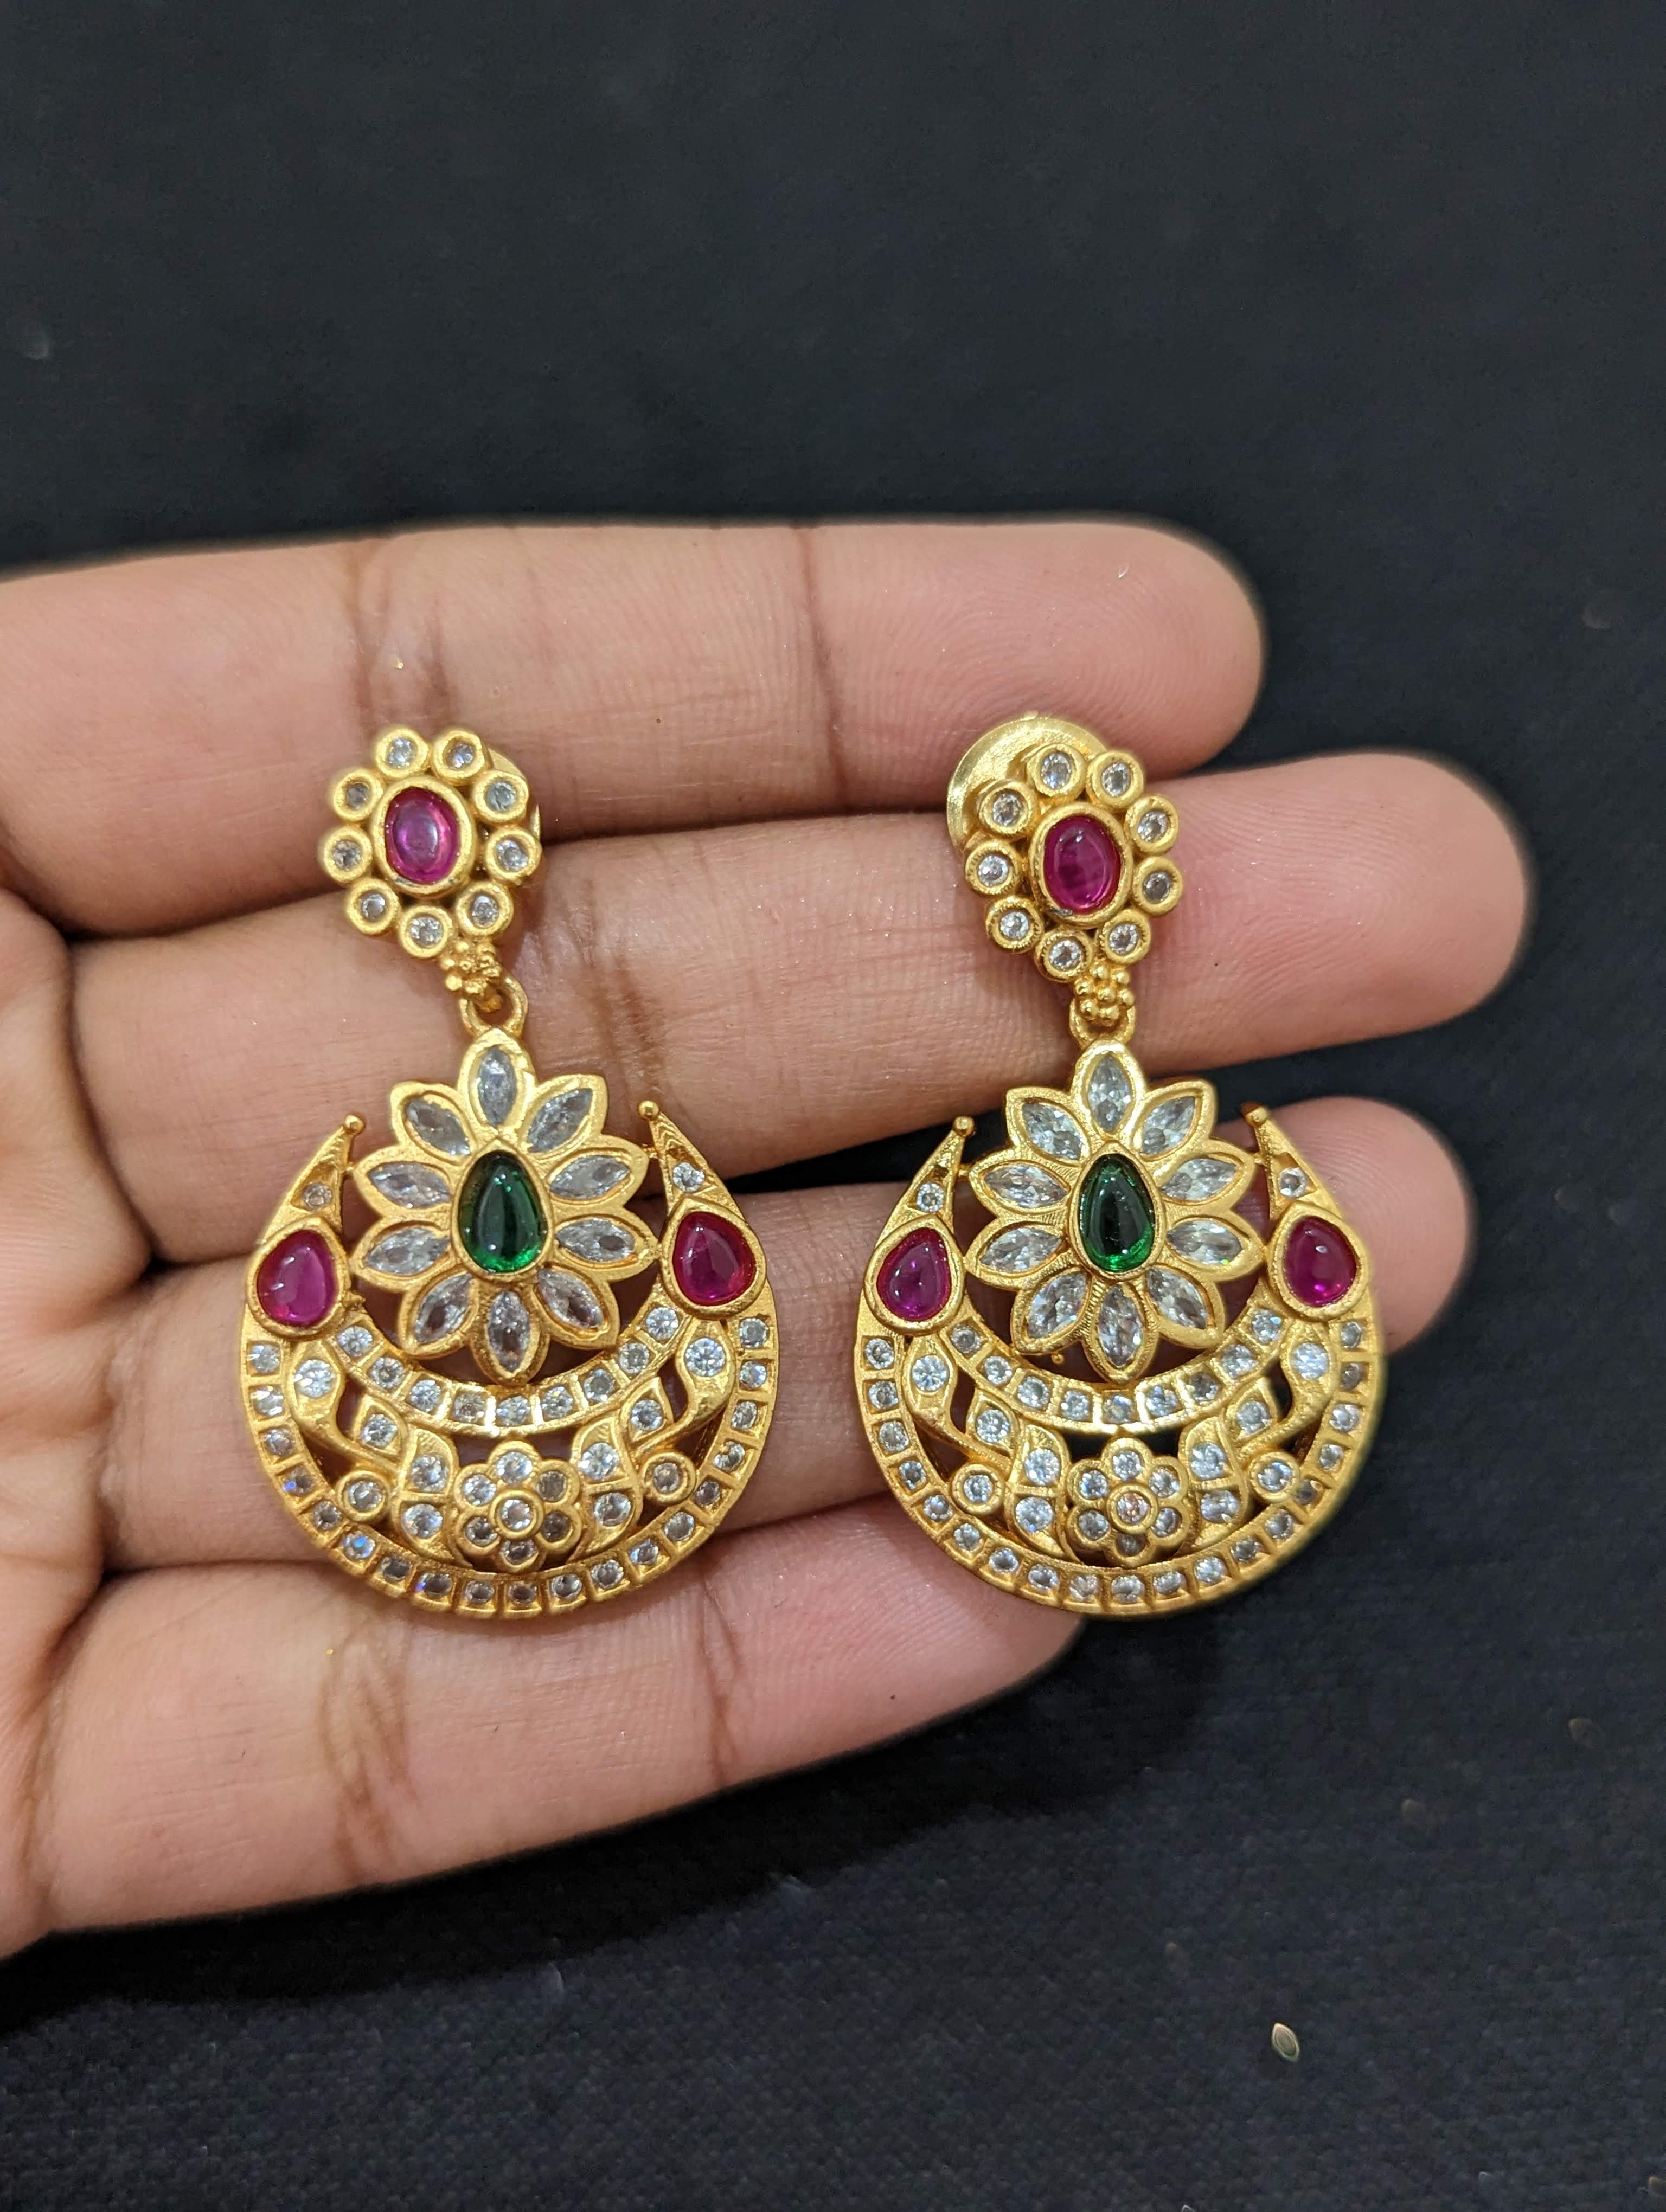 Gold Earrings Jhumka : गोल्ड इयररिंग्स के ये झुमके है बेहद खास,देखे डिज़ाइन